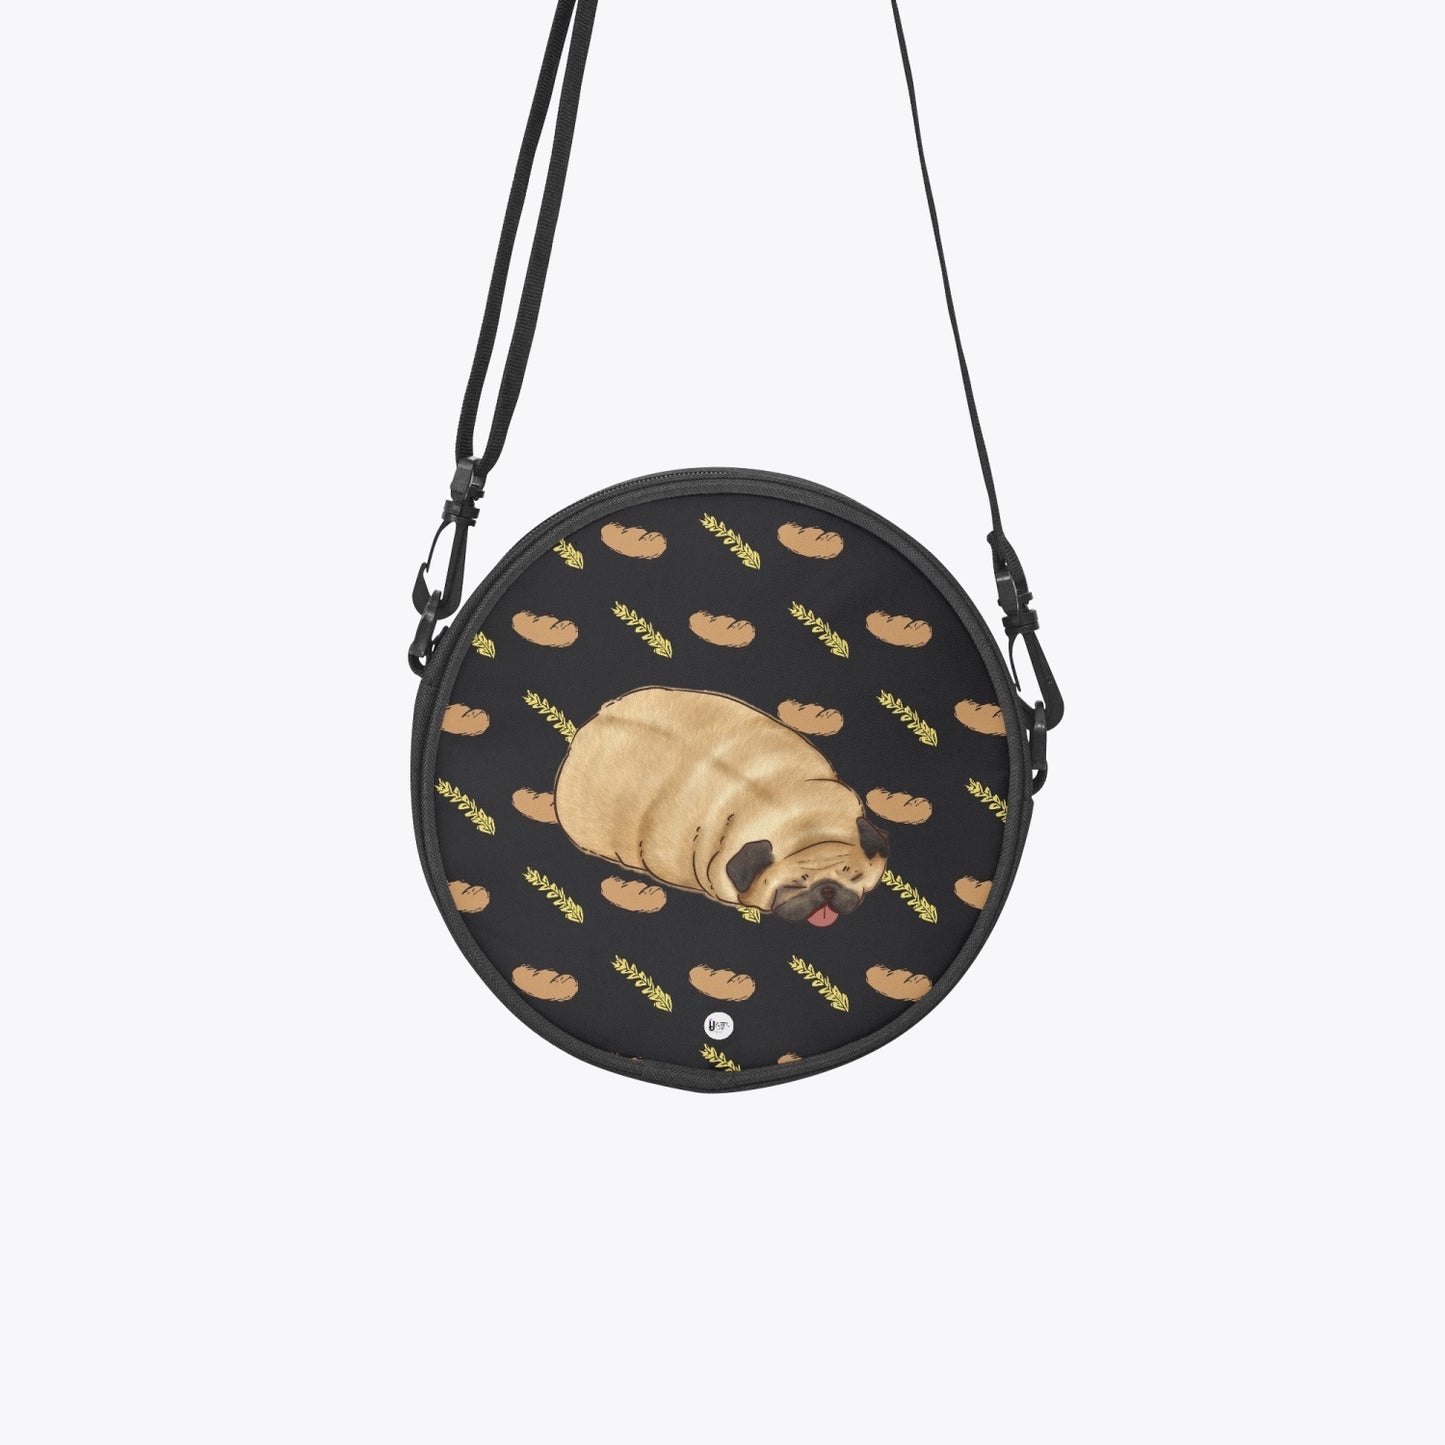 Pug loaf - Round Satchel Bag